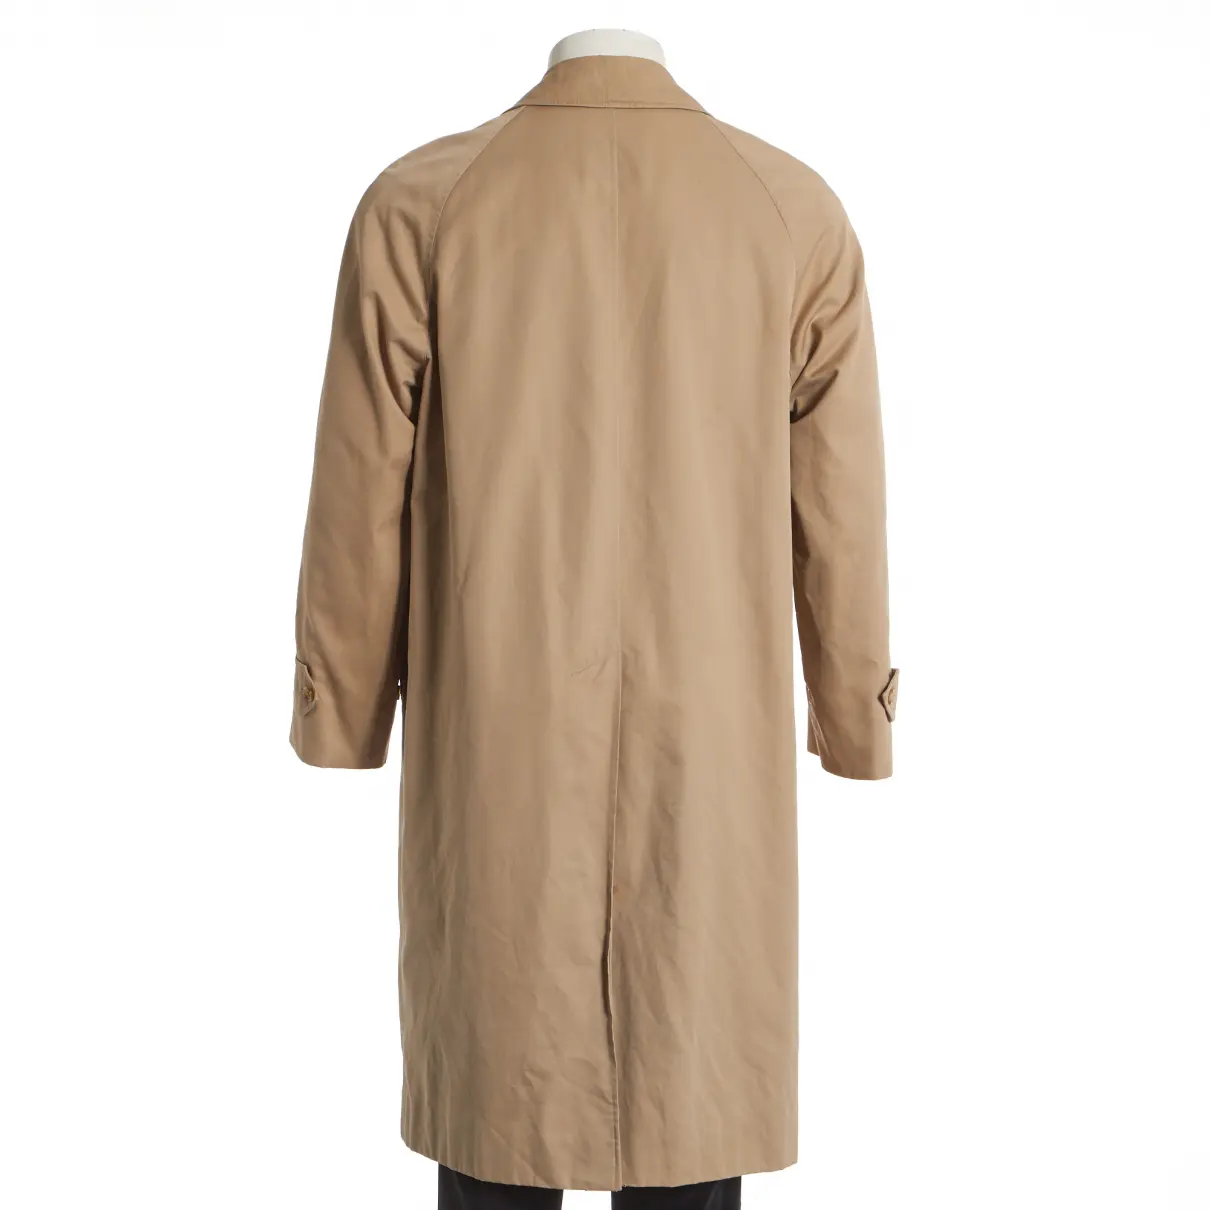 Buy Burberry Trenchcoat online - Vintage